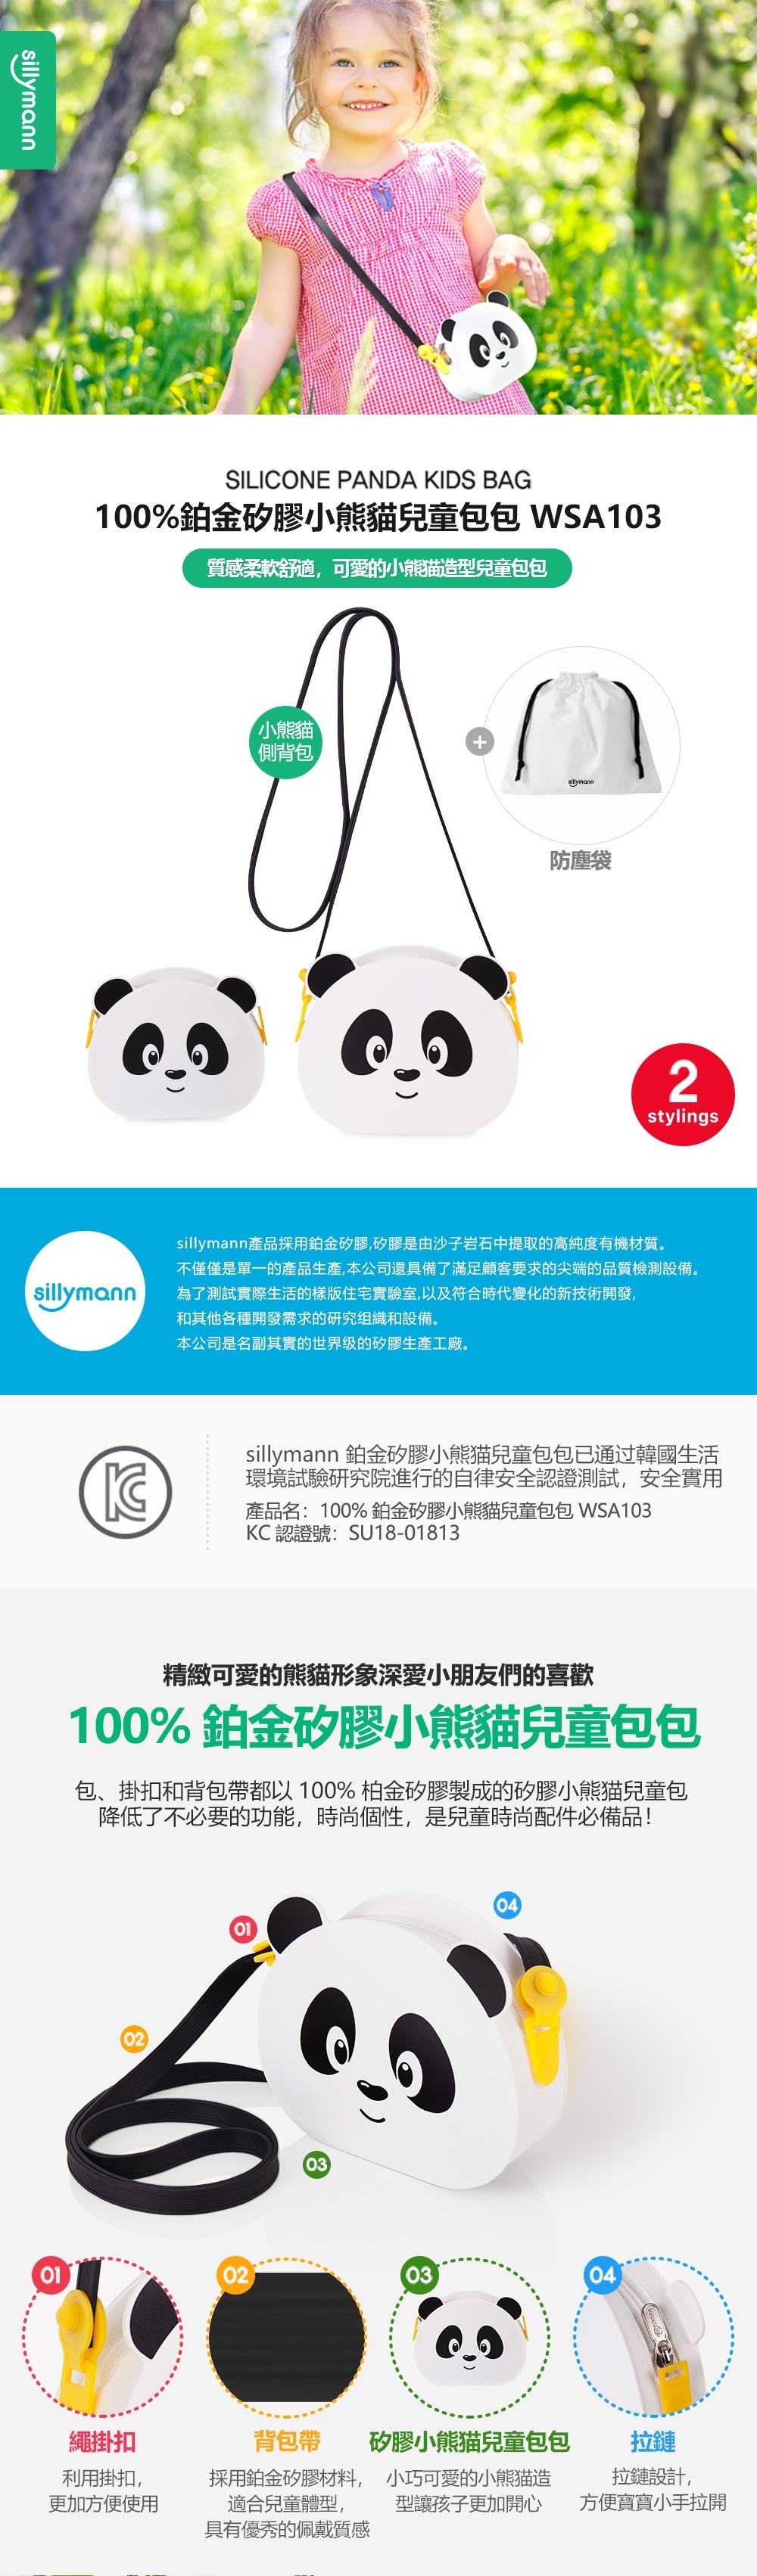 韓國sillymann 100%鉑金矽膠小熊貓兒童包包